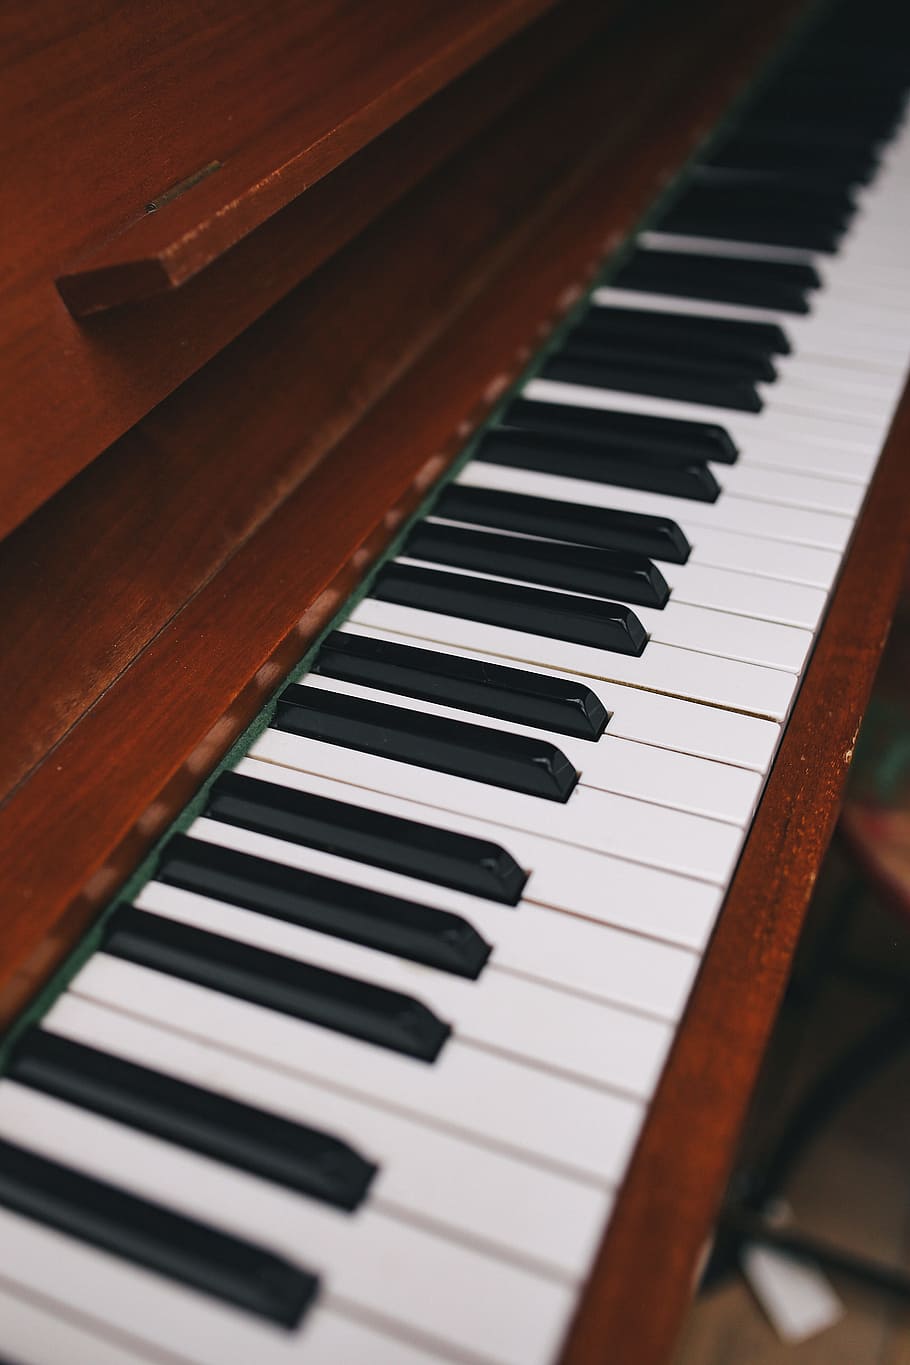 el teclado del piano, teclado, arte, piano, música, melodía, musical, instrumento musical, equipo musical, tecla de piano